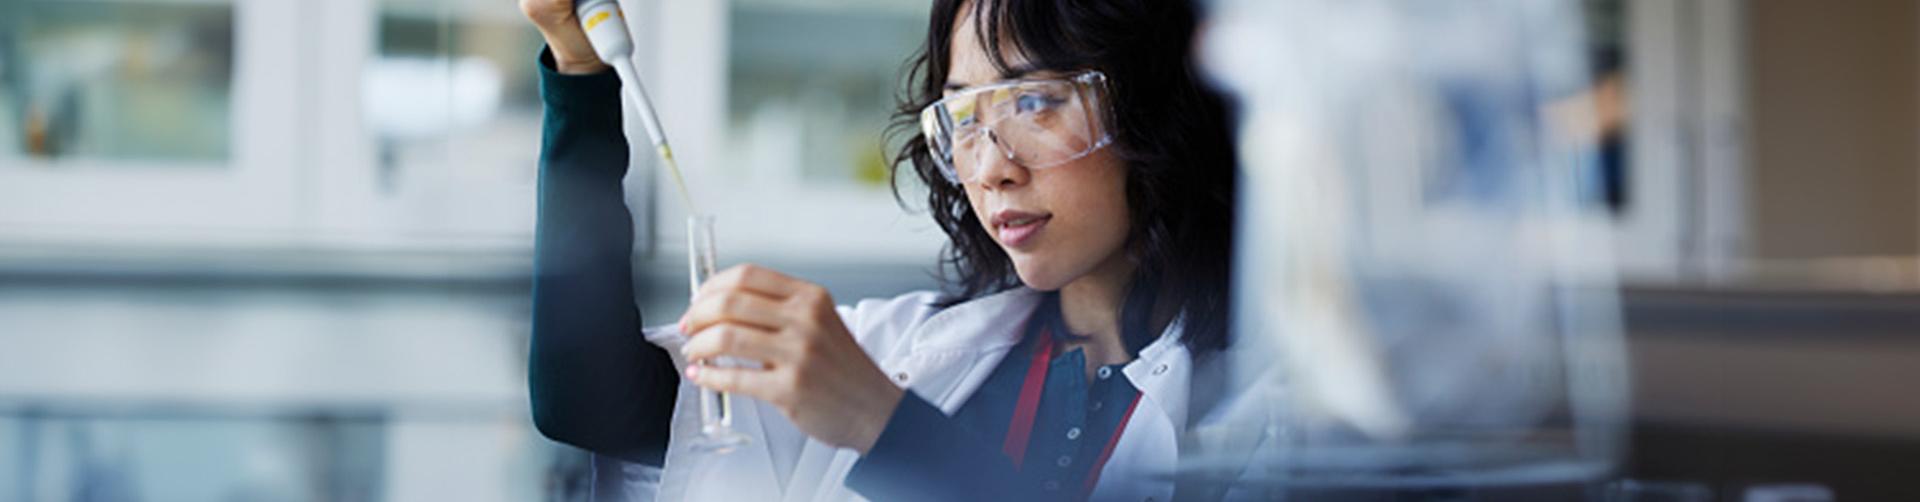 Eine Forscherin füllt ein Reagenzglas in einem Labor